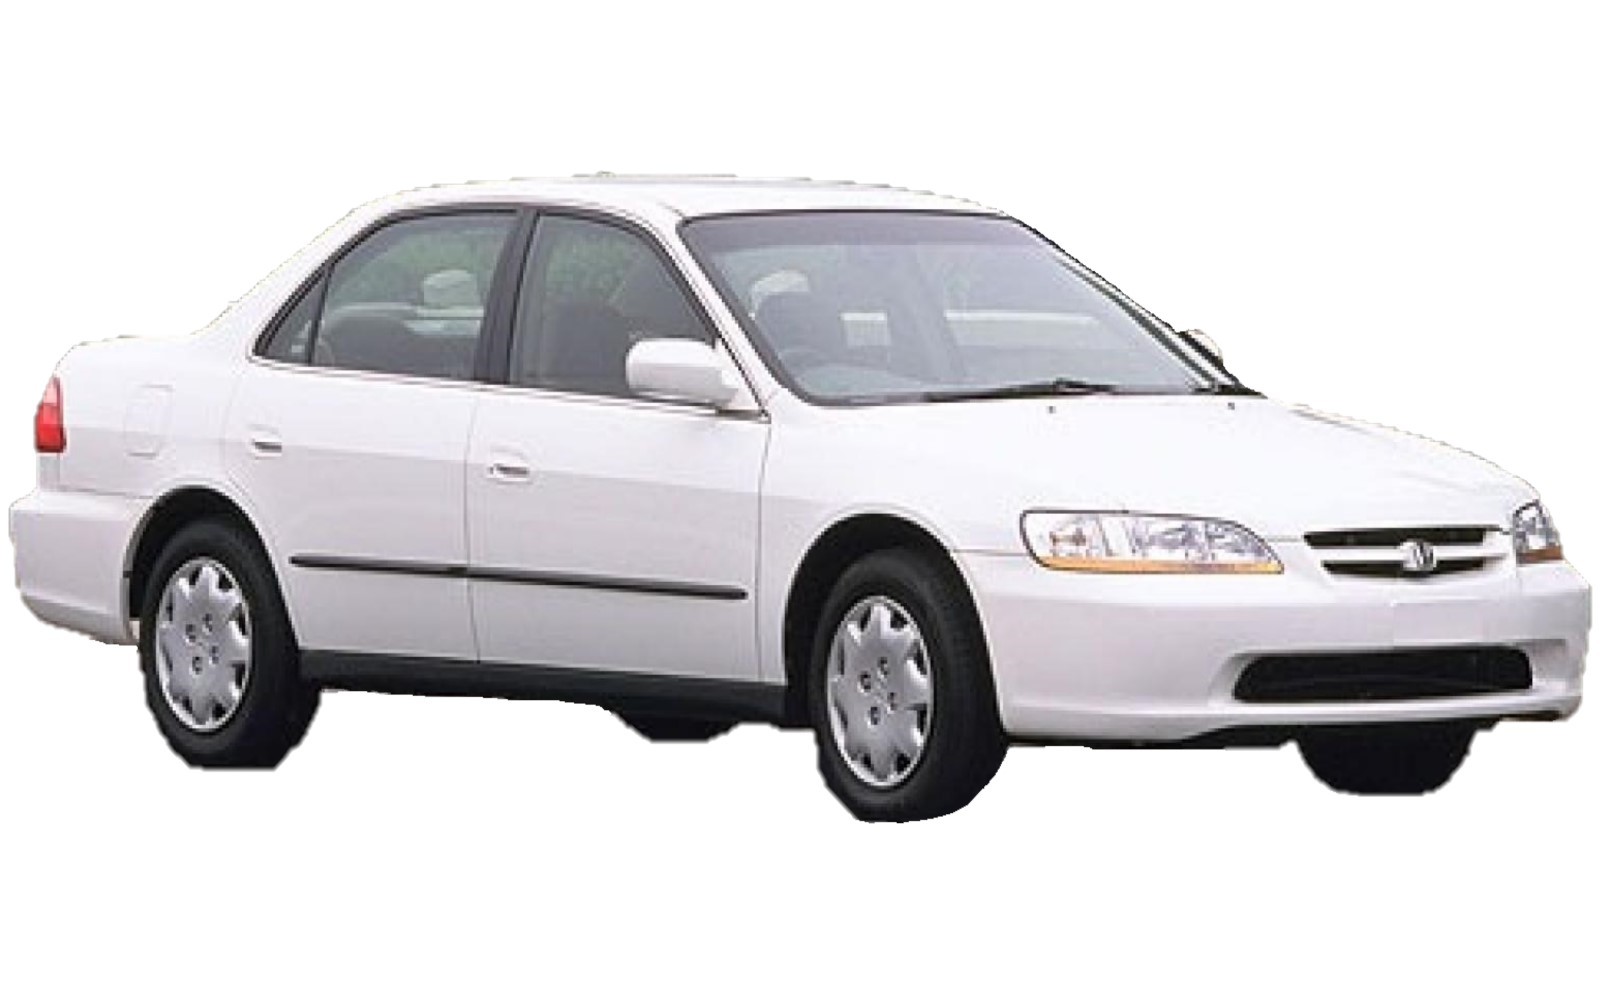 Honda Accord седан 1998. Honda Accord 1993. Accord.1997 Honda Accord. Дефлектор капота Хонда Аккорд 6 cg8.